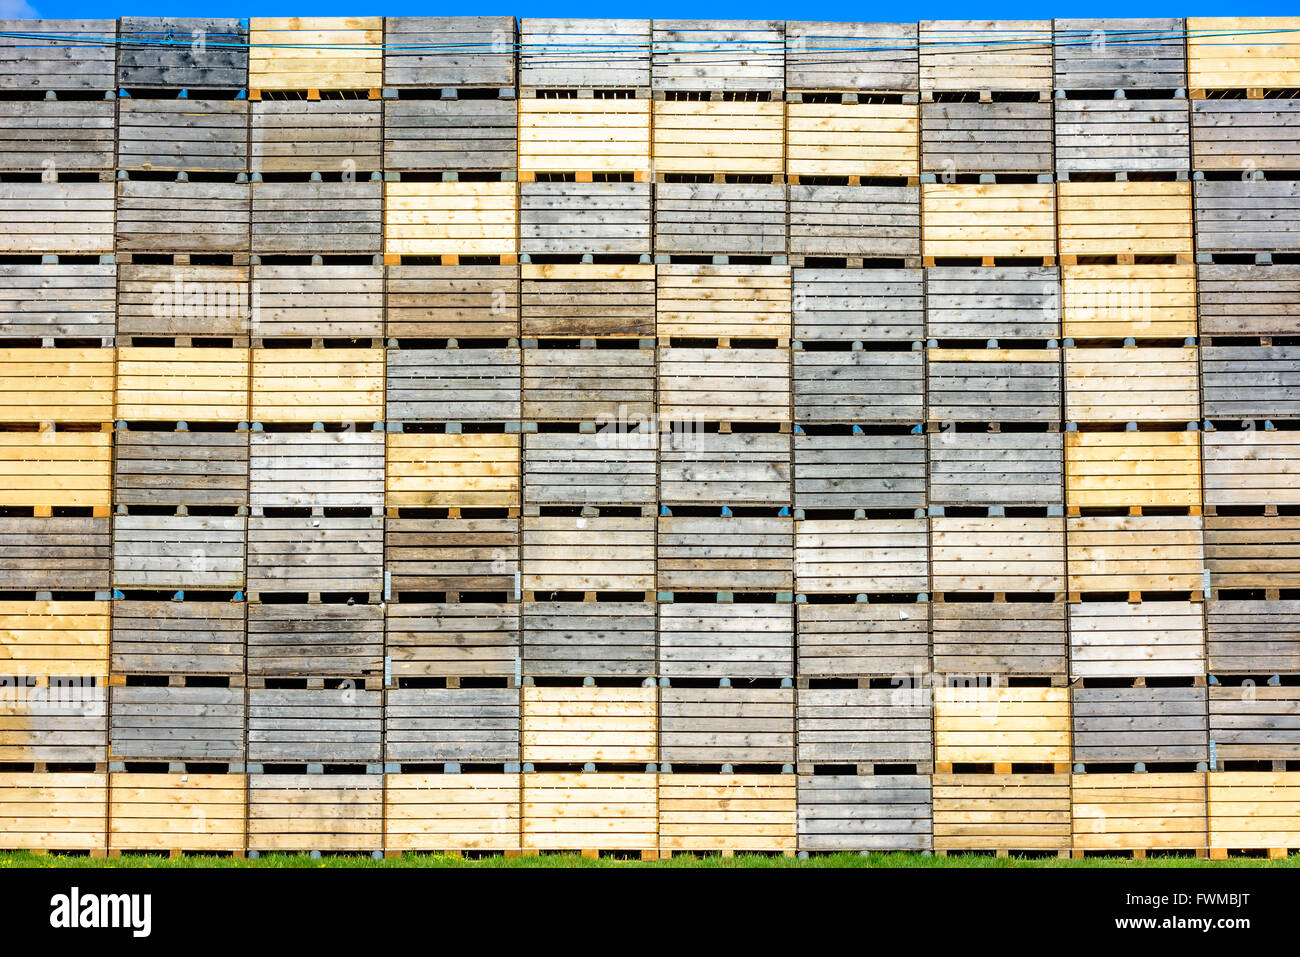 Un sacco di cassette di legno su pallet impilati come una parete alta. Scheggia di cielo blu in alto. Foto Stock